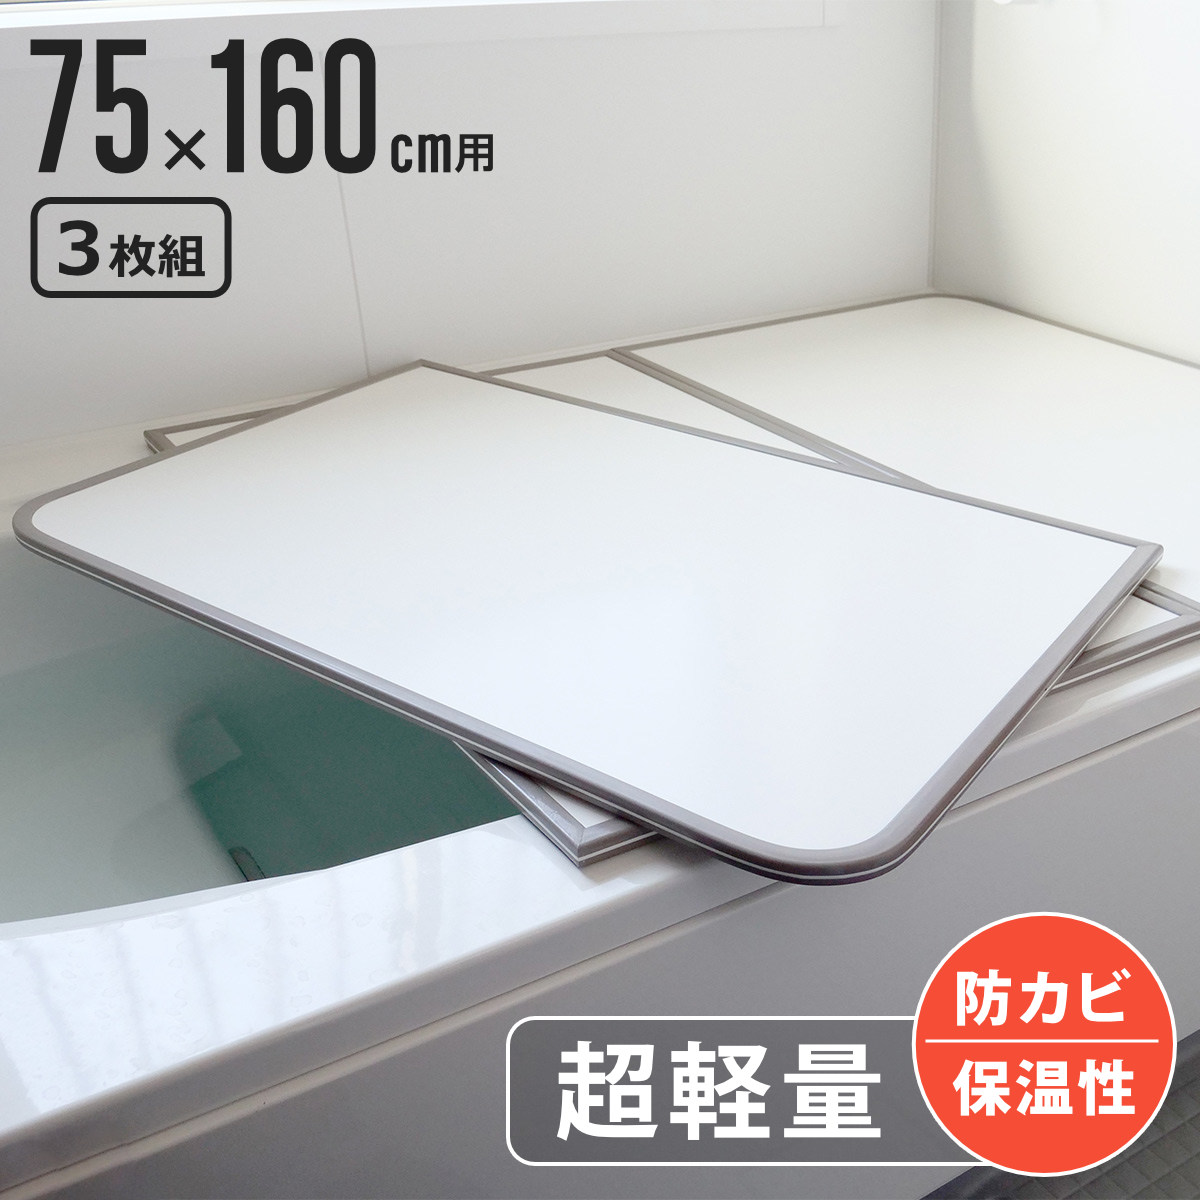  風呂ふた 組み合わせ 軽量 カビの生えにくい風呂ふた L-16 75×160cm 実寸73×158cm 3枚組